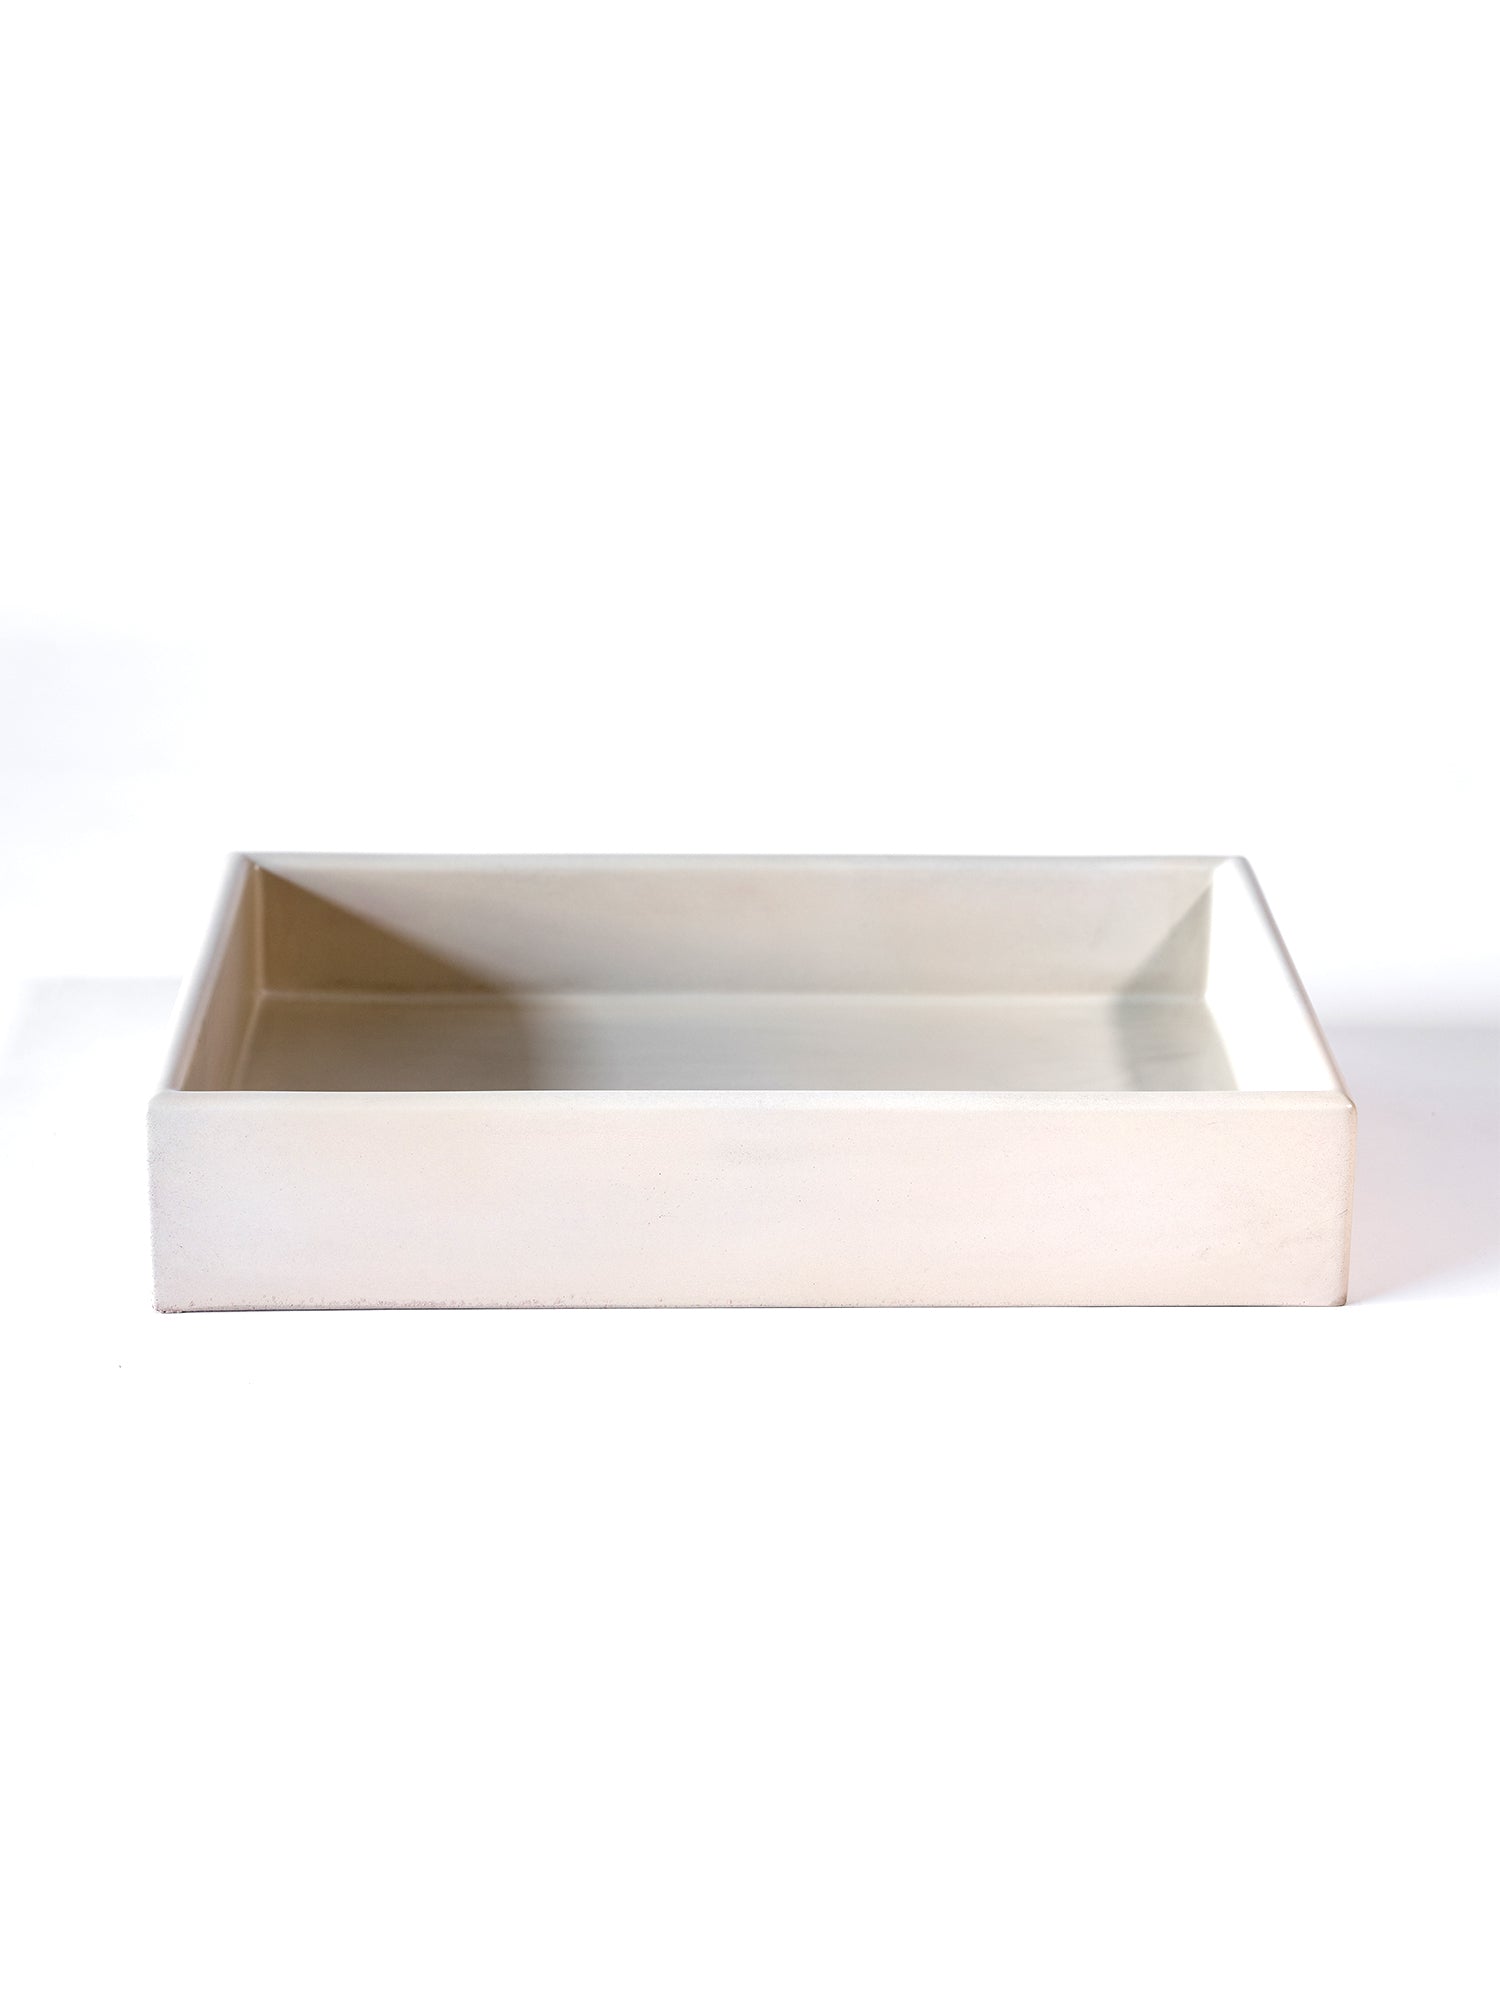 The Box Concrete Countertop Basin (Price Upon Request)